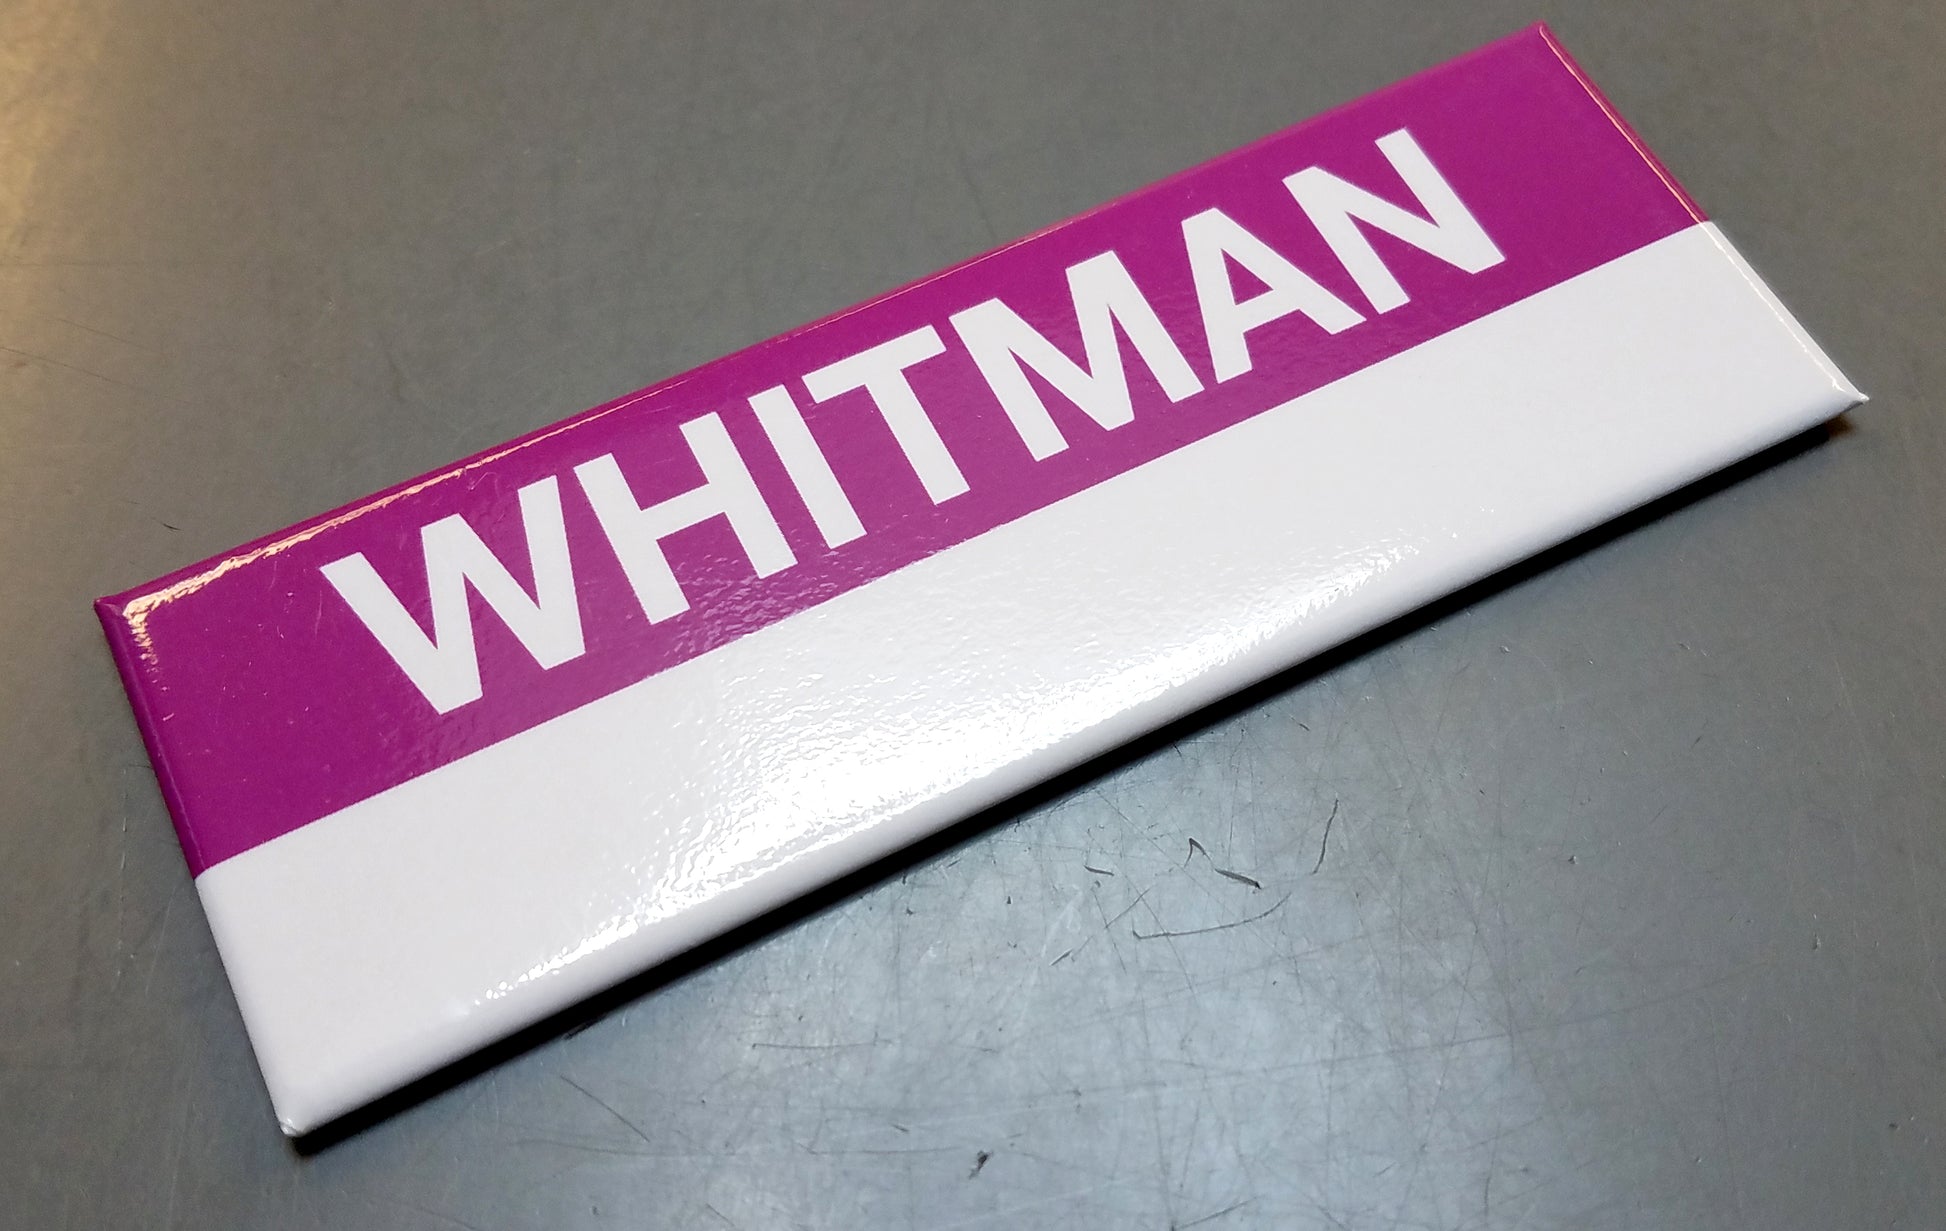 Commuter Rail Station Magnet: Whitman